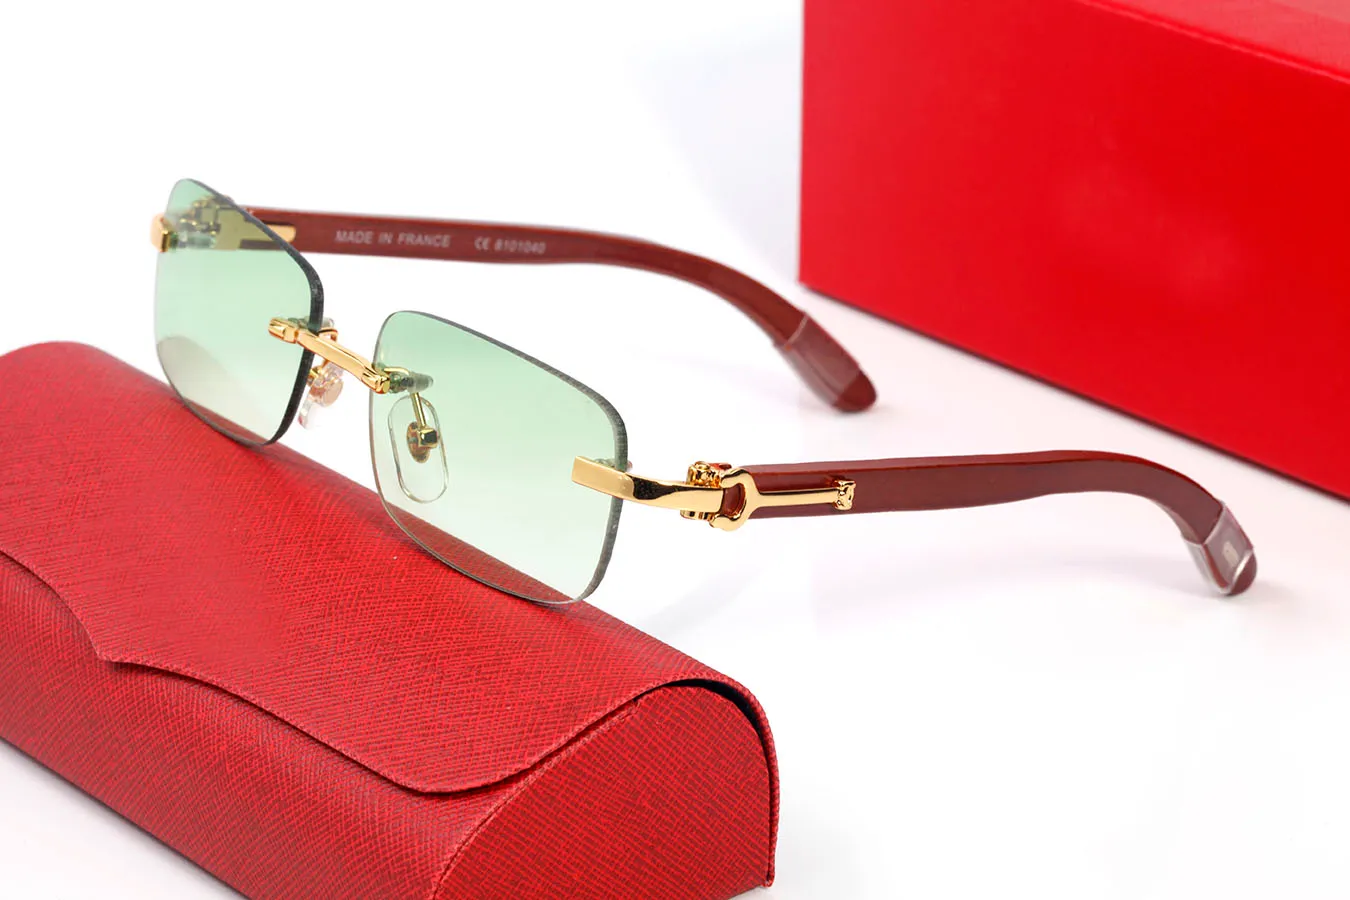 Design Women Sunglassesluxu, For White Wooden And For $11.92 Driving Buffalo Horn From Square Frameless Sunglasses Men Vintage